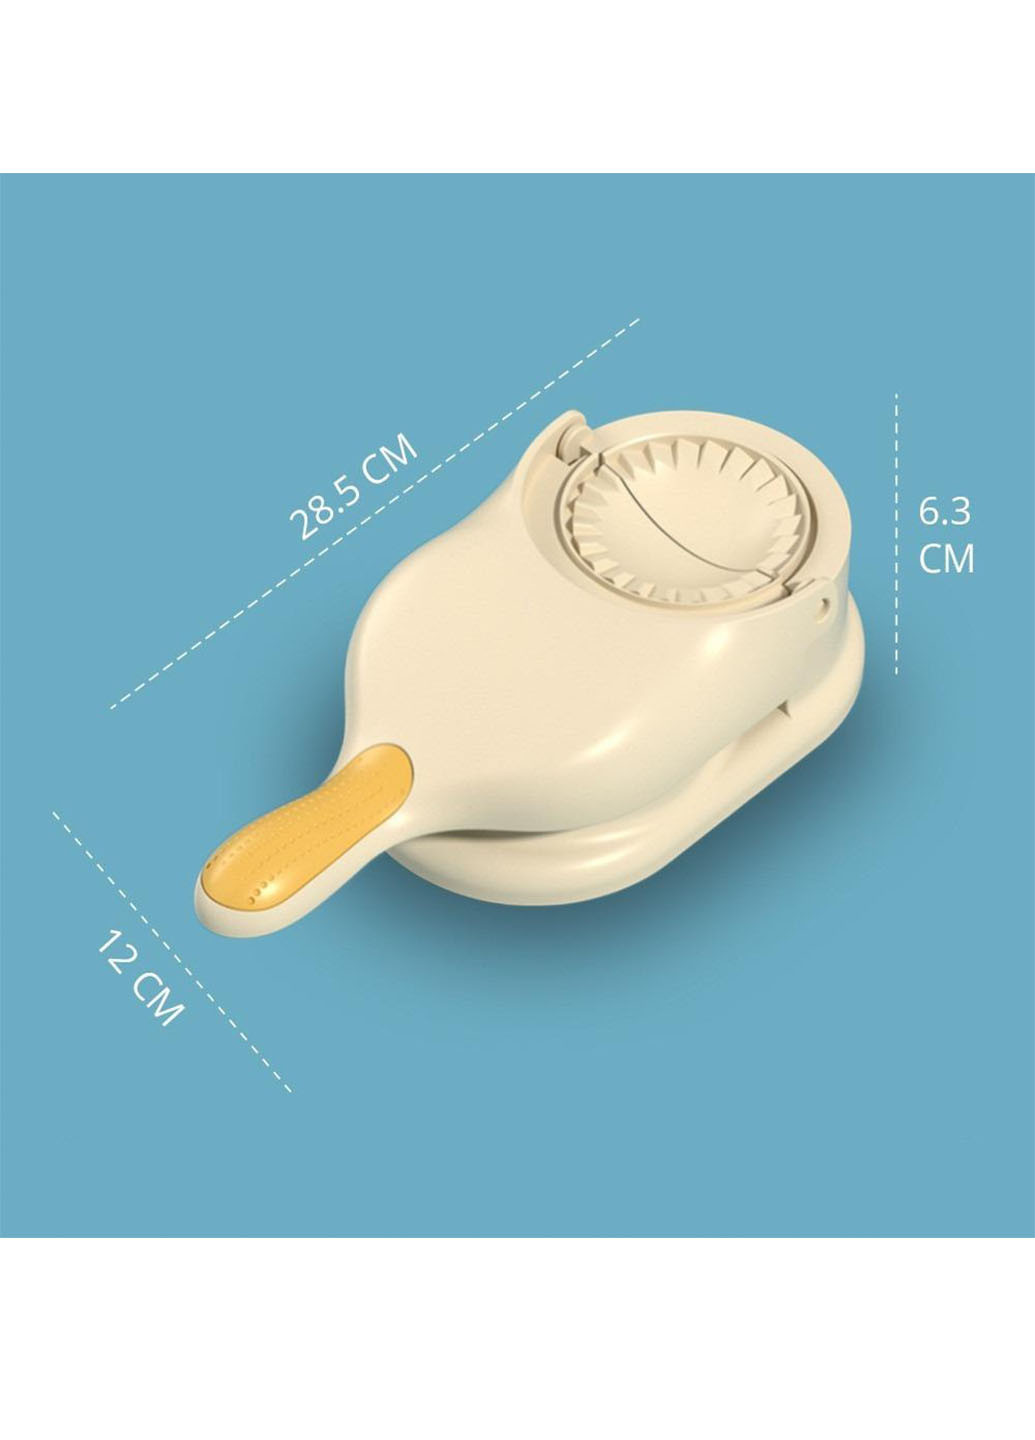 Ручна машинка-апарат для розкачування тіста й автоматичного ліплення вареників і пельменів Good Idea dumpling mold 2в1 (260165839)